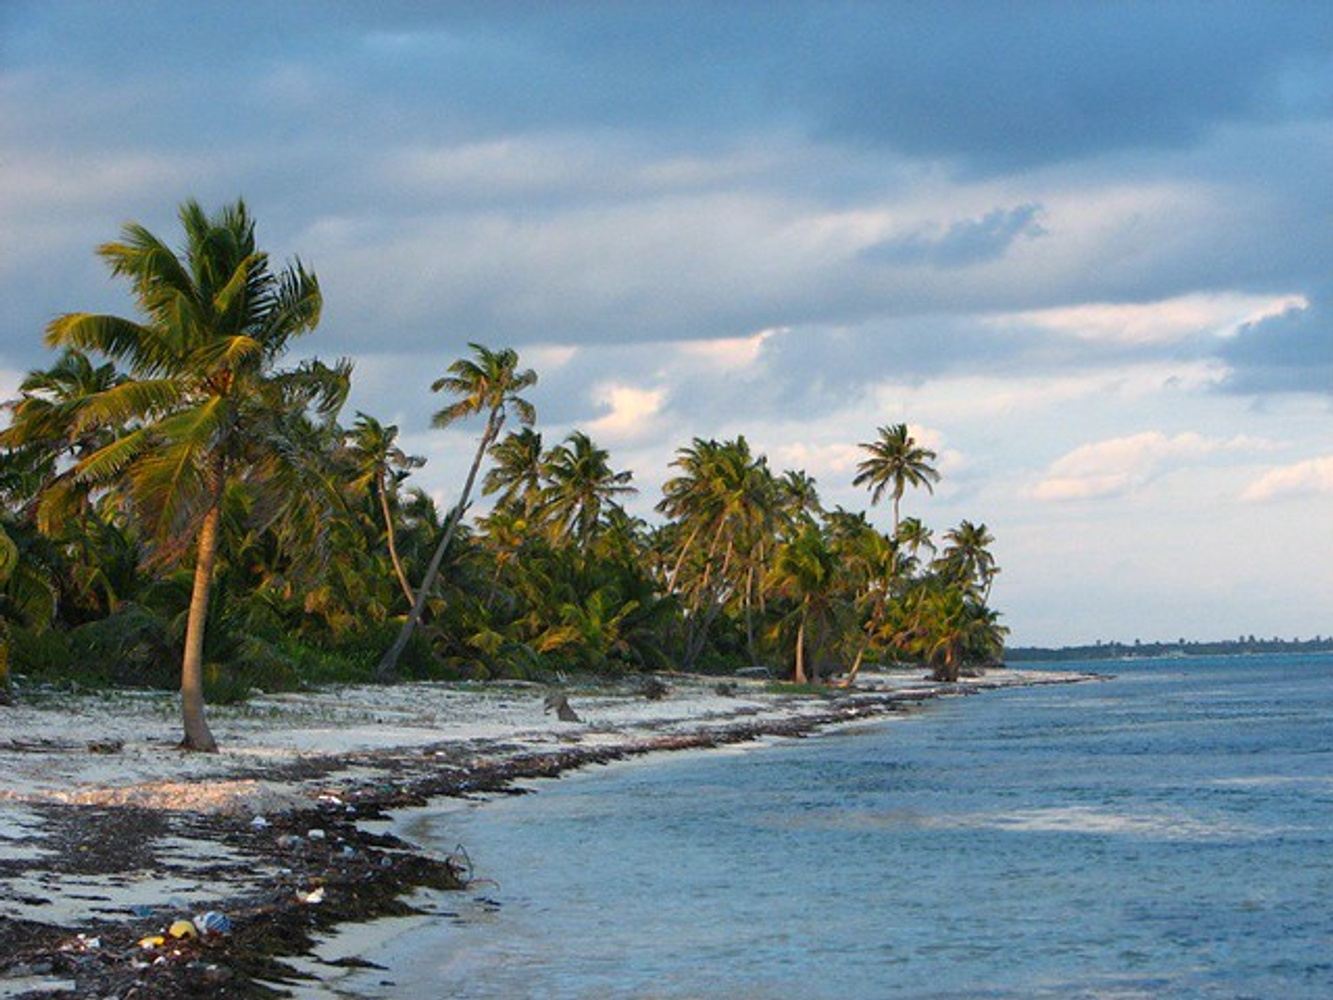 Belize: A Self-Care Retreat